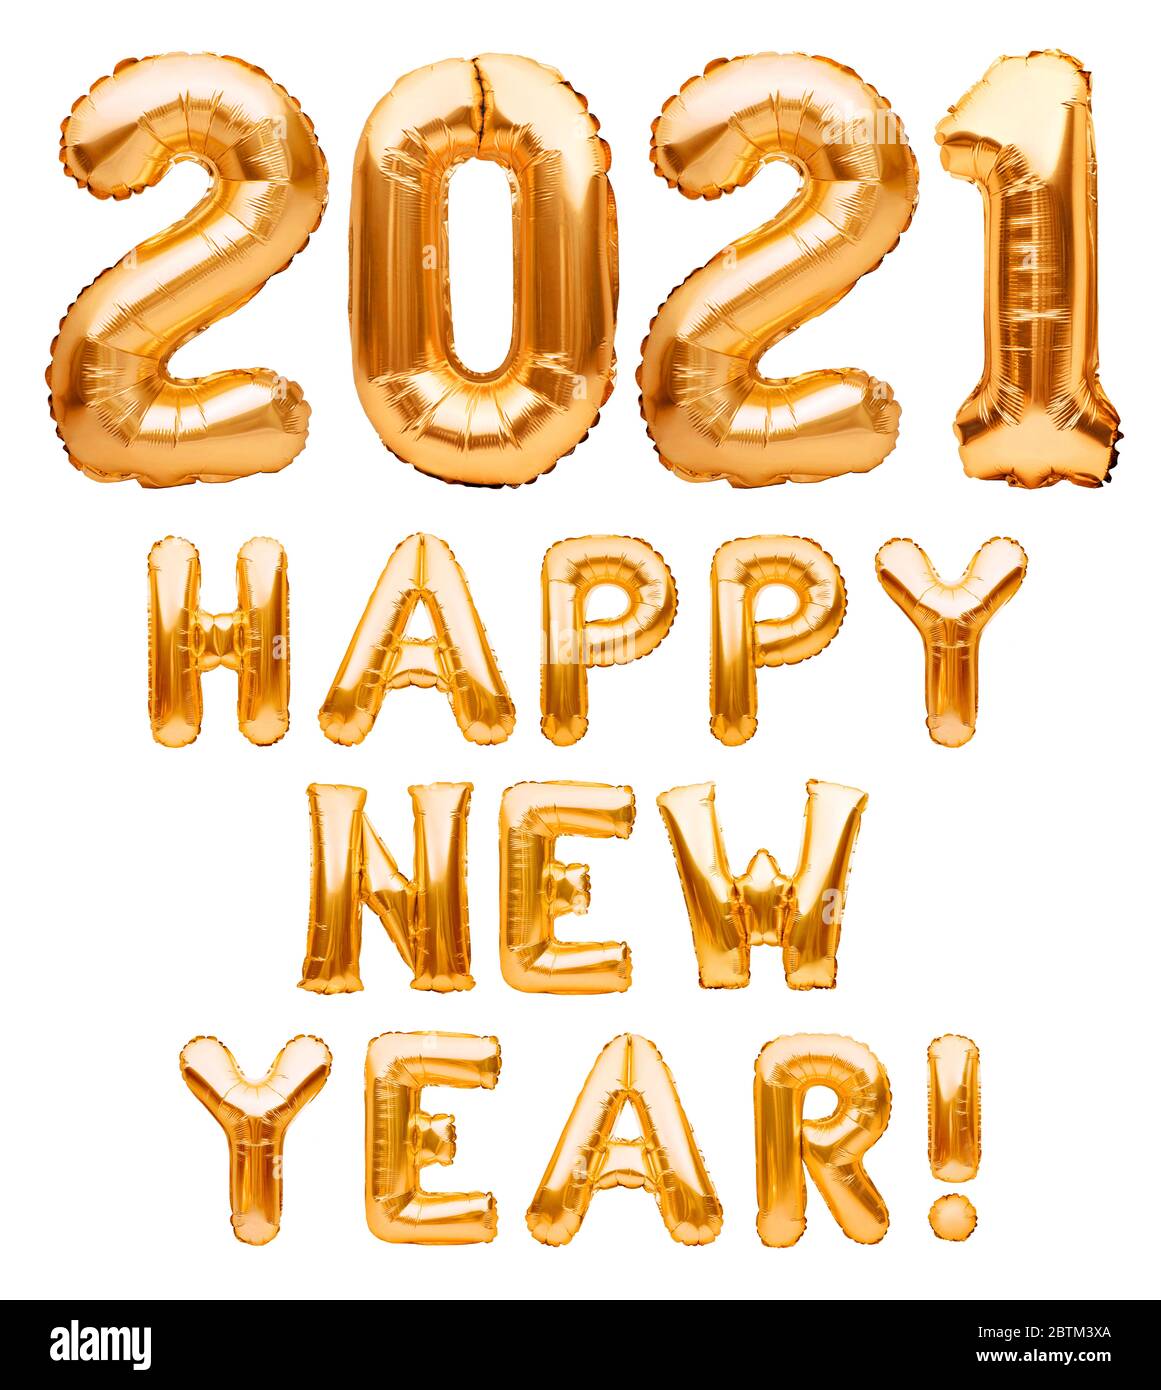 Bonne année 2021 phrase faite de ballons gonflables dorés isolés sur blanc. Ballons d'hélium formant Bonne année 2021 félicitations, feuille Banque D'Images